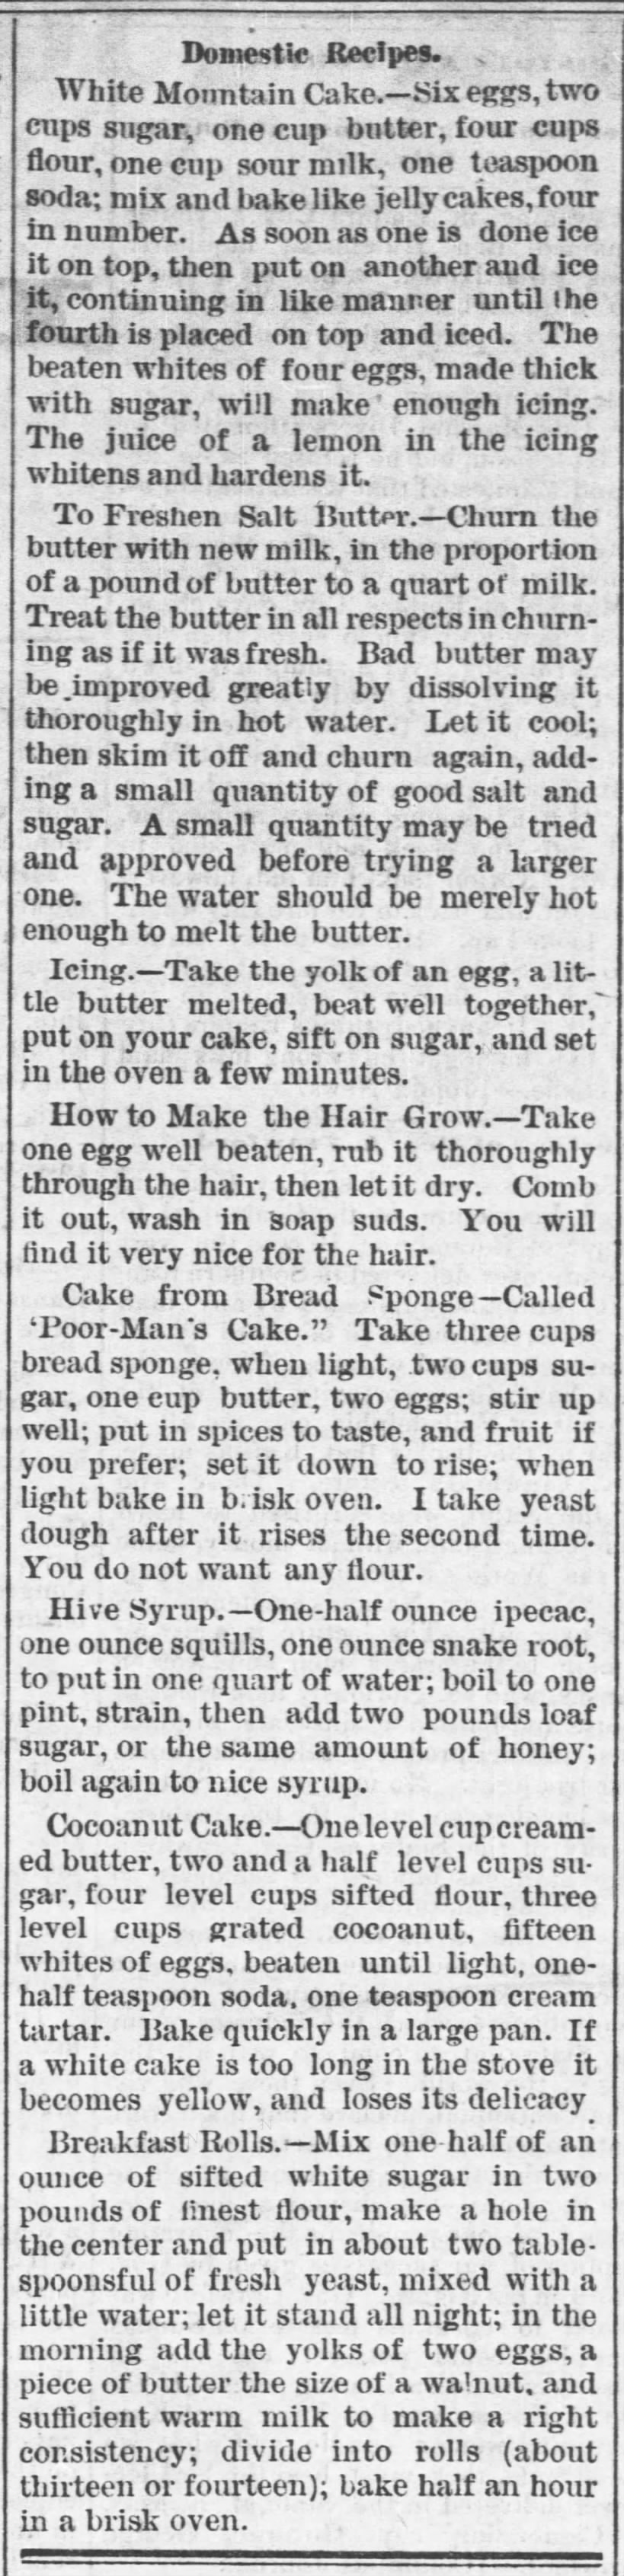 Domestic Recipes (Coconut Cake) 6-21-1878